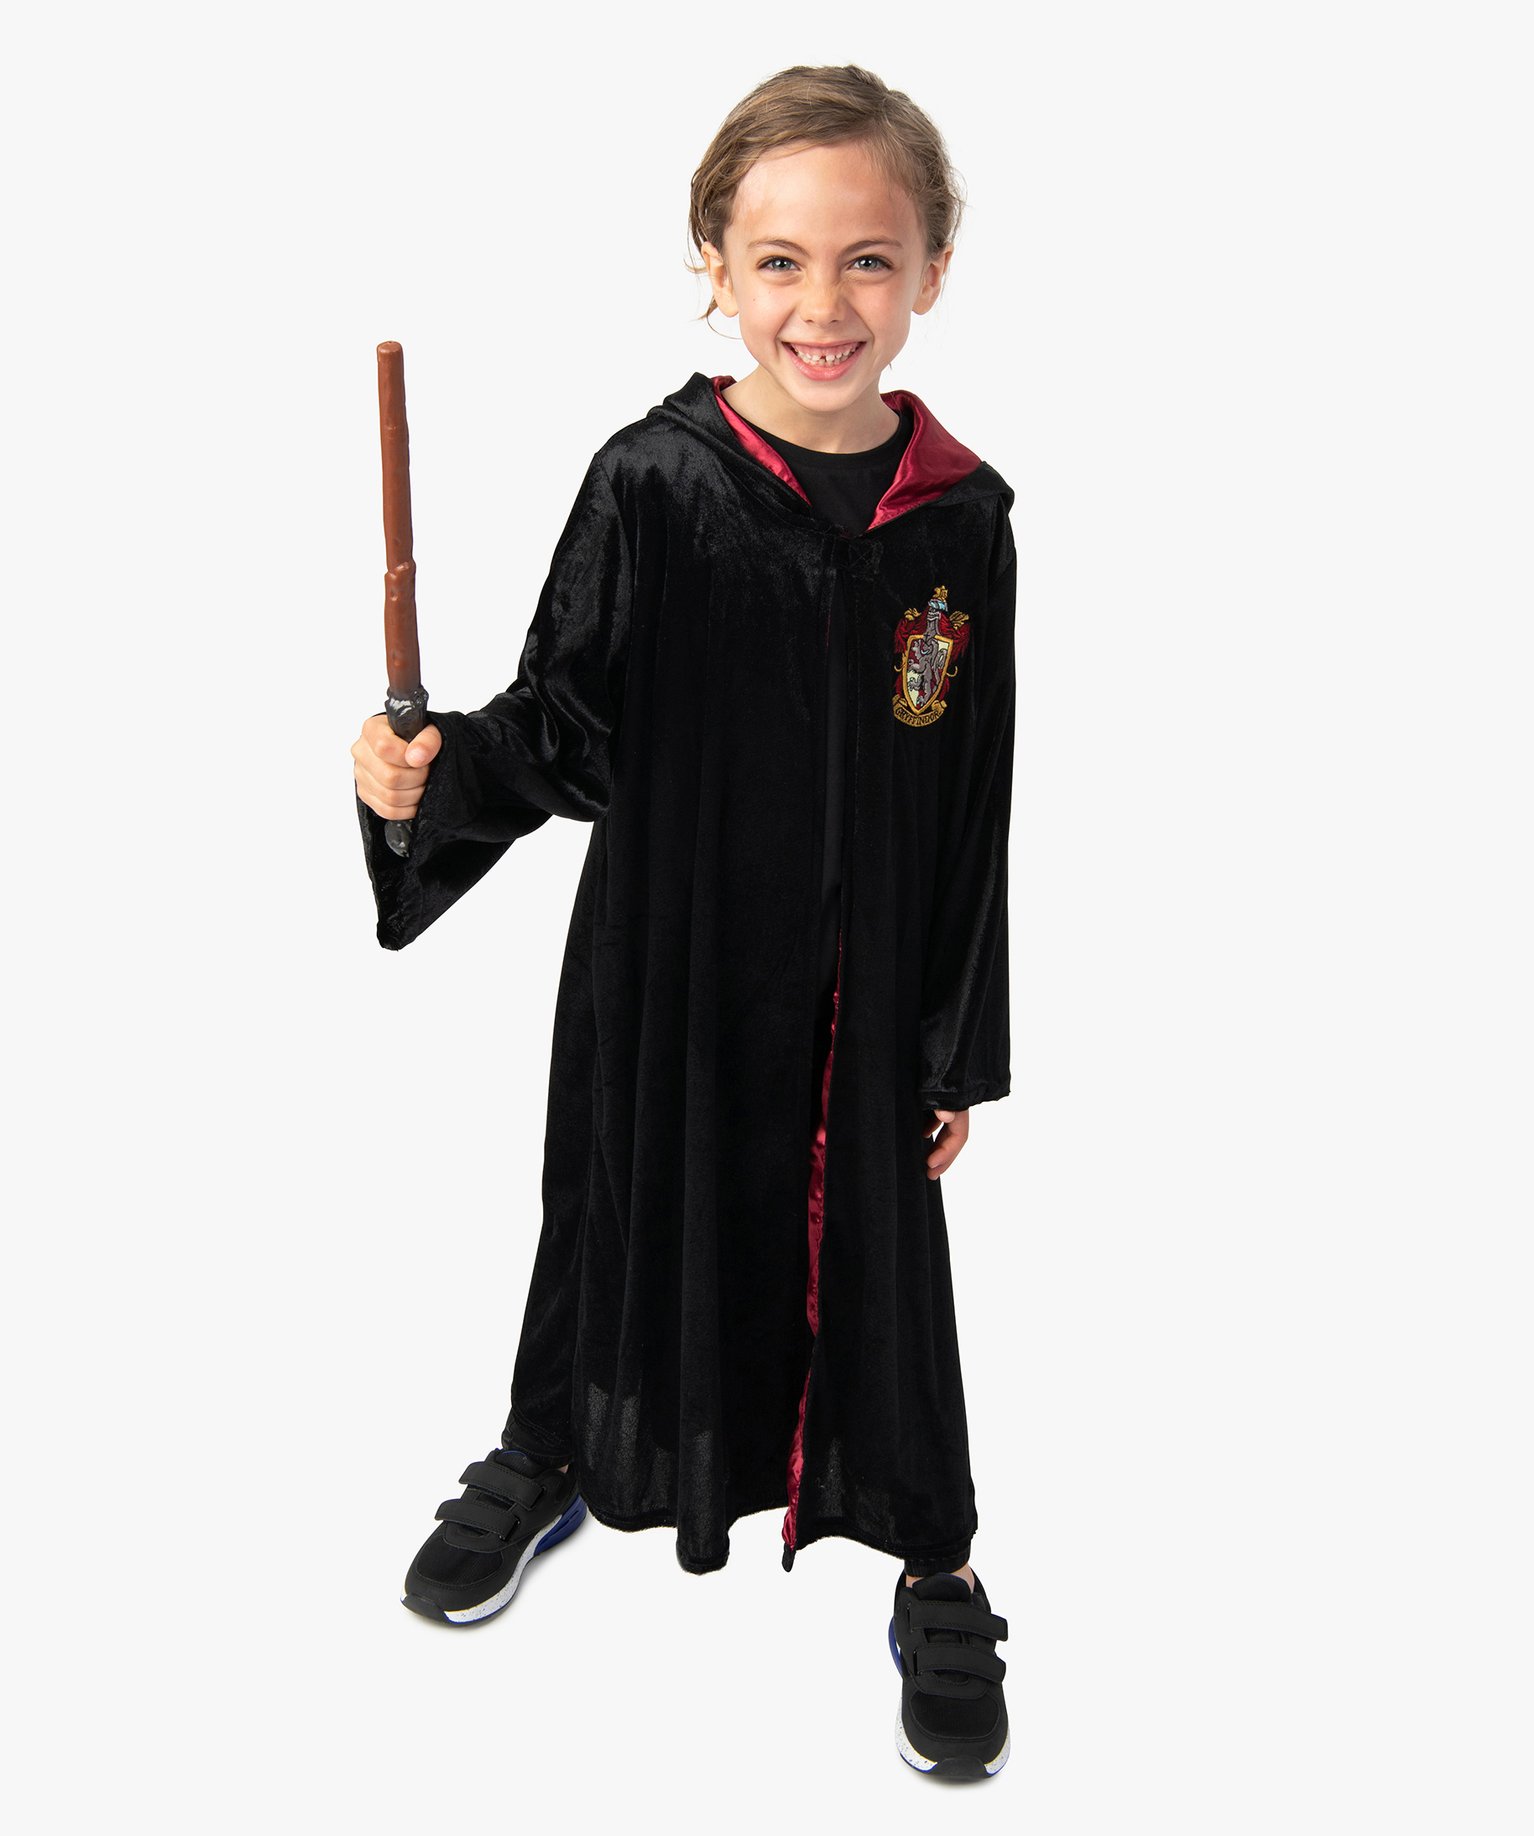 Baguette Harry Potter Accessoire Deguisement Enfant Gemo